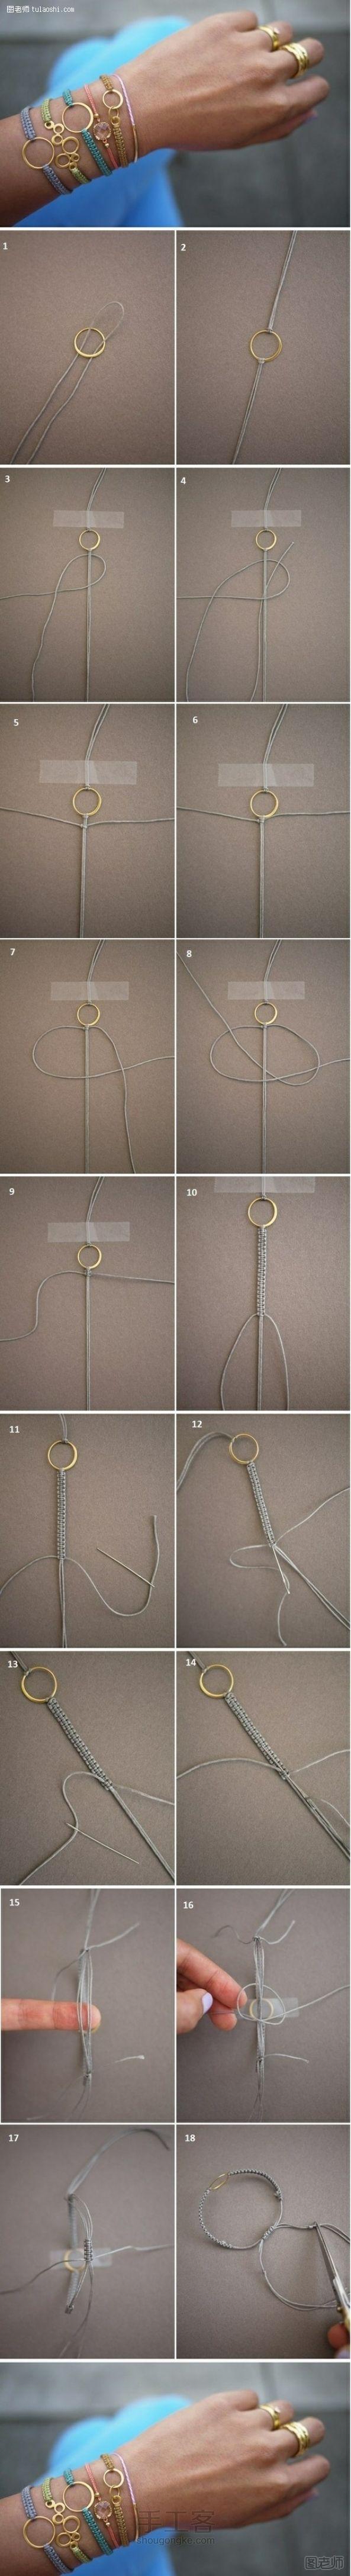 手工编织图解教程【图】 几个绳编打结方法